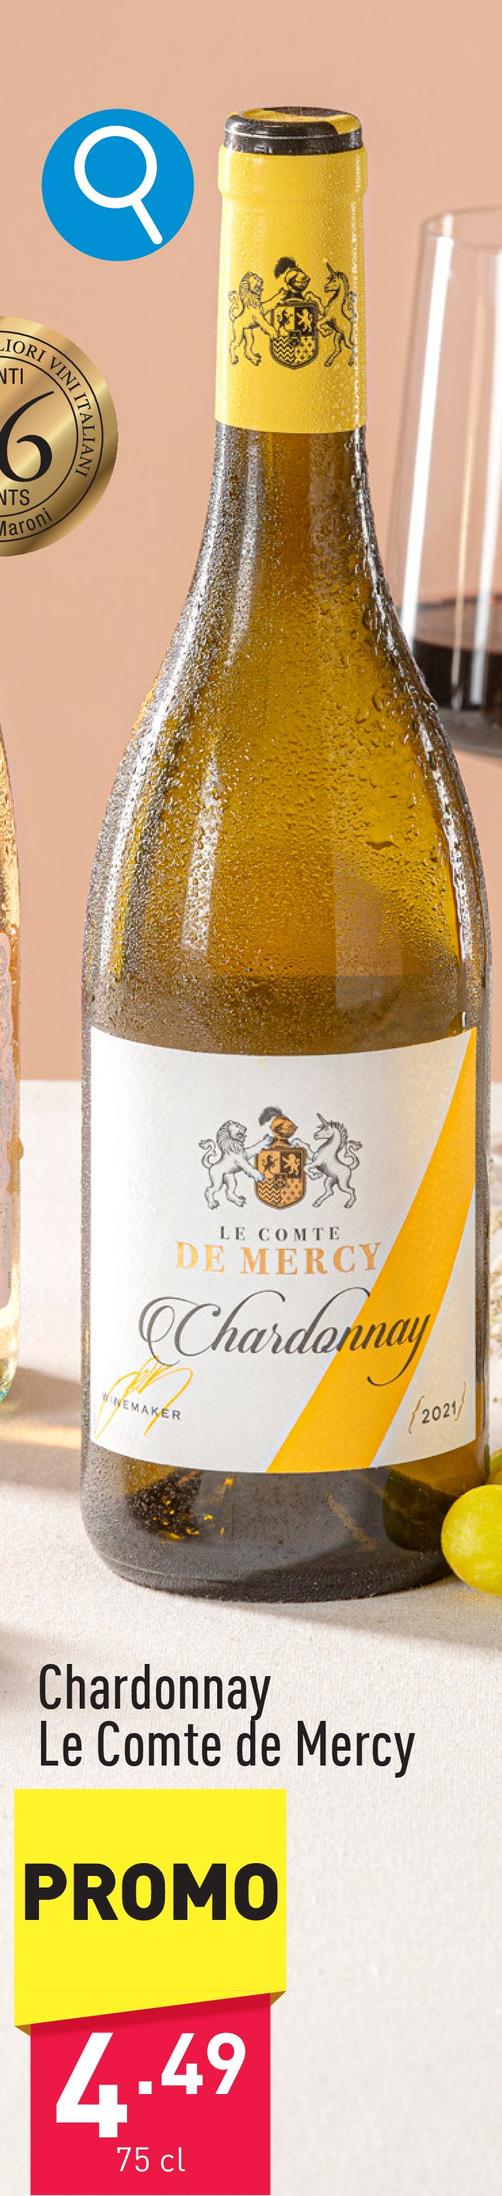 Chardonnay Le Comte de Mercy soepele en charmante witte wijn uit Hongarije met delicate aroma's van geel steenfruit, in de neus een subtiele houttoets, in de mond typische perzikaroma's en een mooie aciditeitdruivensoort: chardonnayaanbeveling: bij visgerechten of wit vleesjaargang: 2022